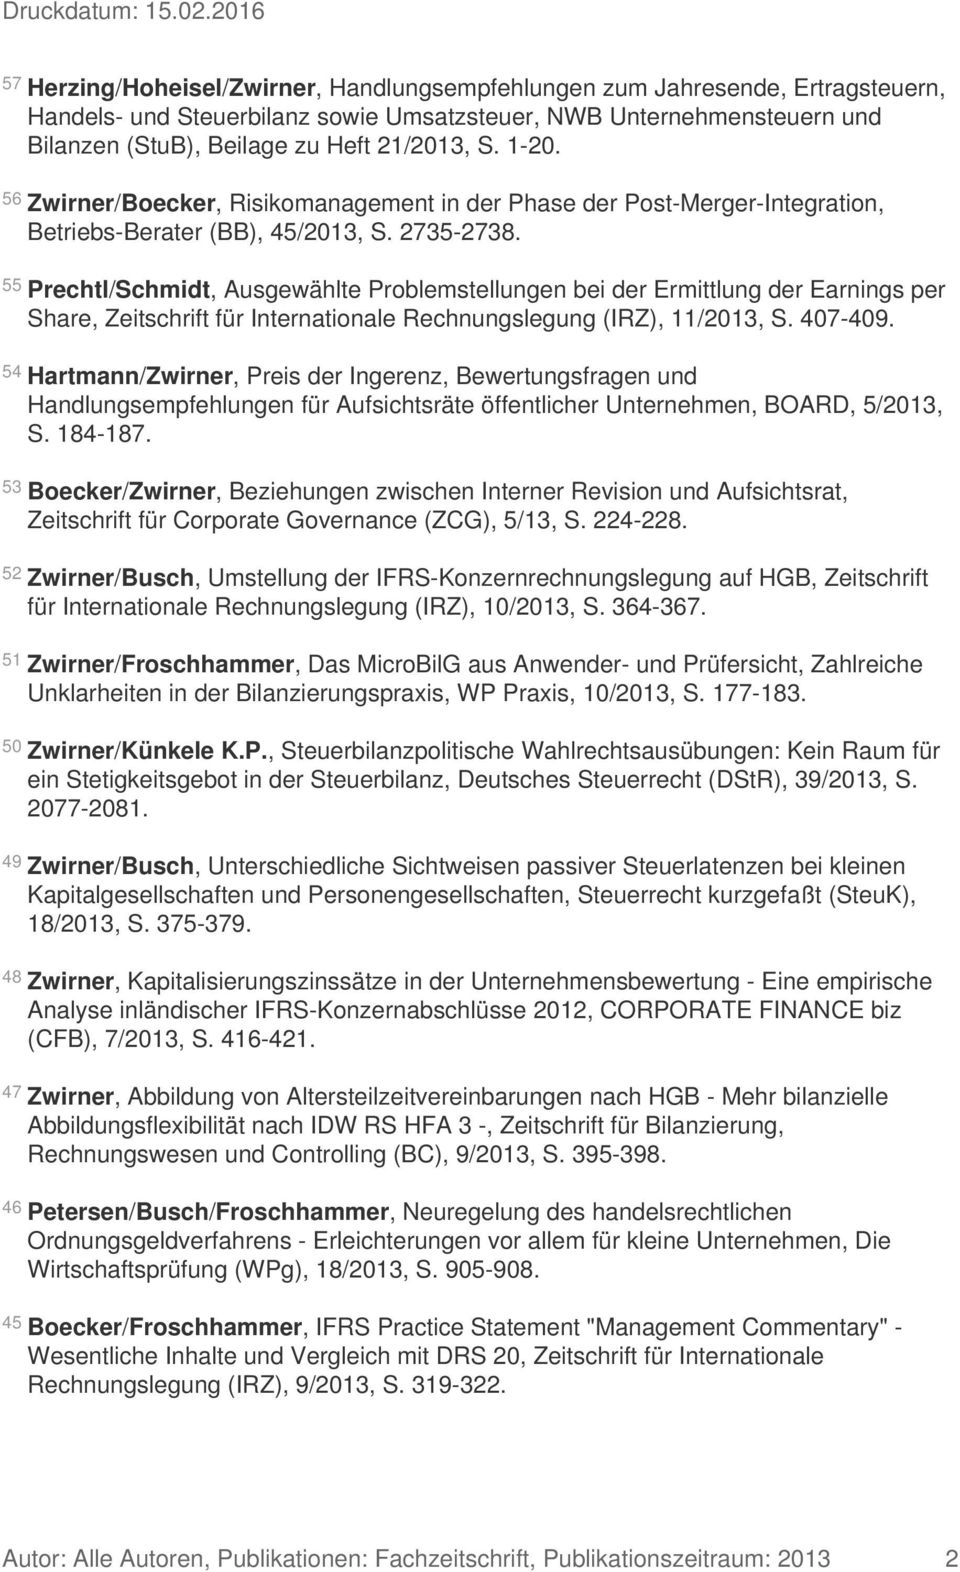 55 Prechtl/Schmidt, Ausgewählte Problemstellungen bei der Ermittlung der Earnings per Share, Zeitschrift für Internationale Rechnungslegung (IRZ), 11/2013, S. 407-409.